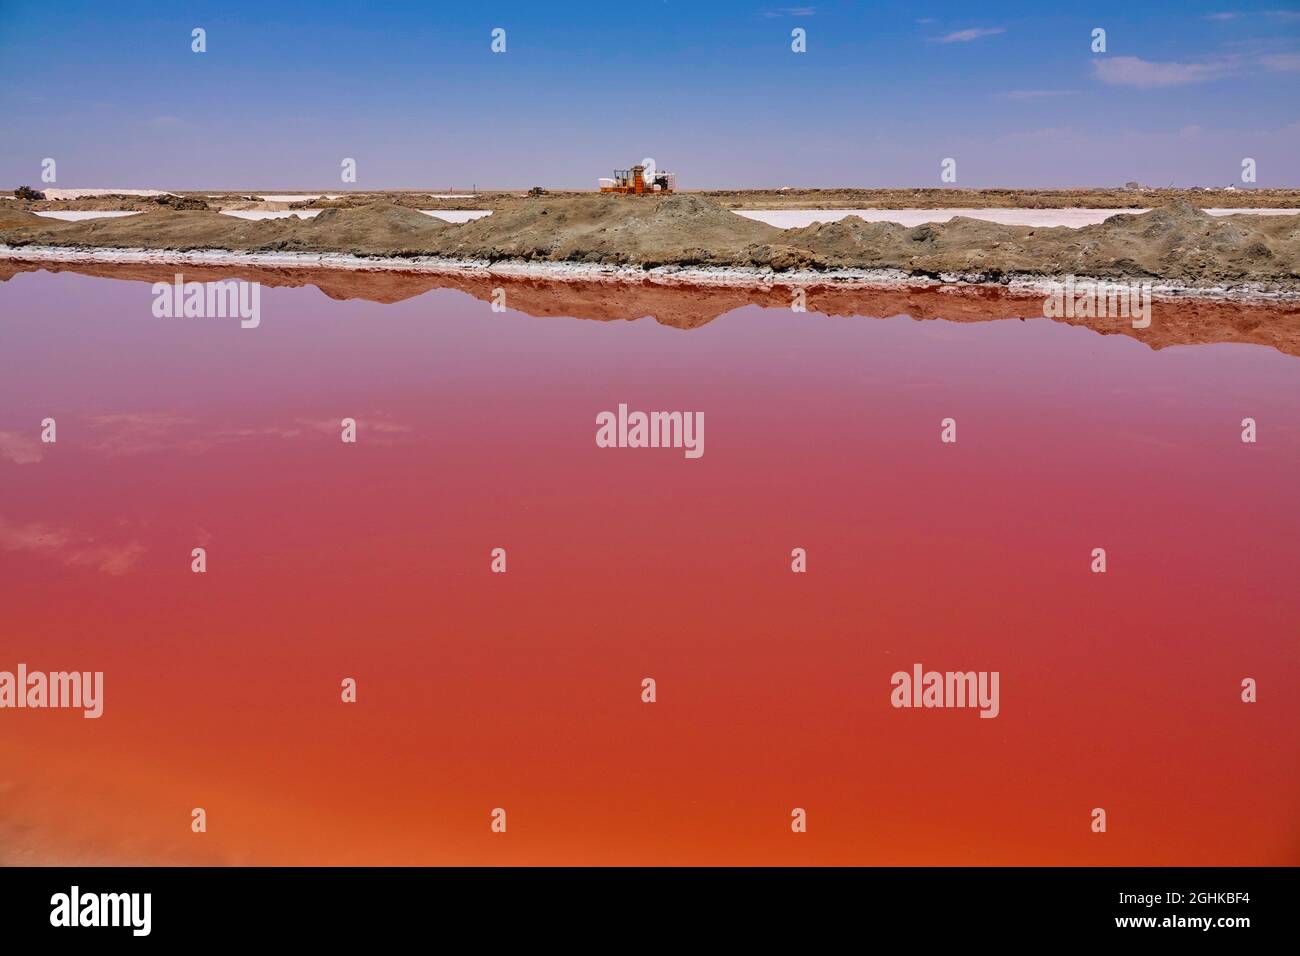 Le sel peut être extrait du lac de saumure rouge. Terrain de dunes de sable spécial. Flocks of flamants (flamants roses). Walvis Bay (Whale Bay), Namibie. 2019 octobre Banque D'Images